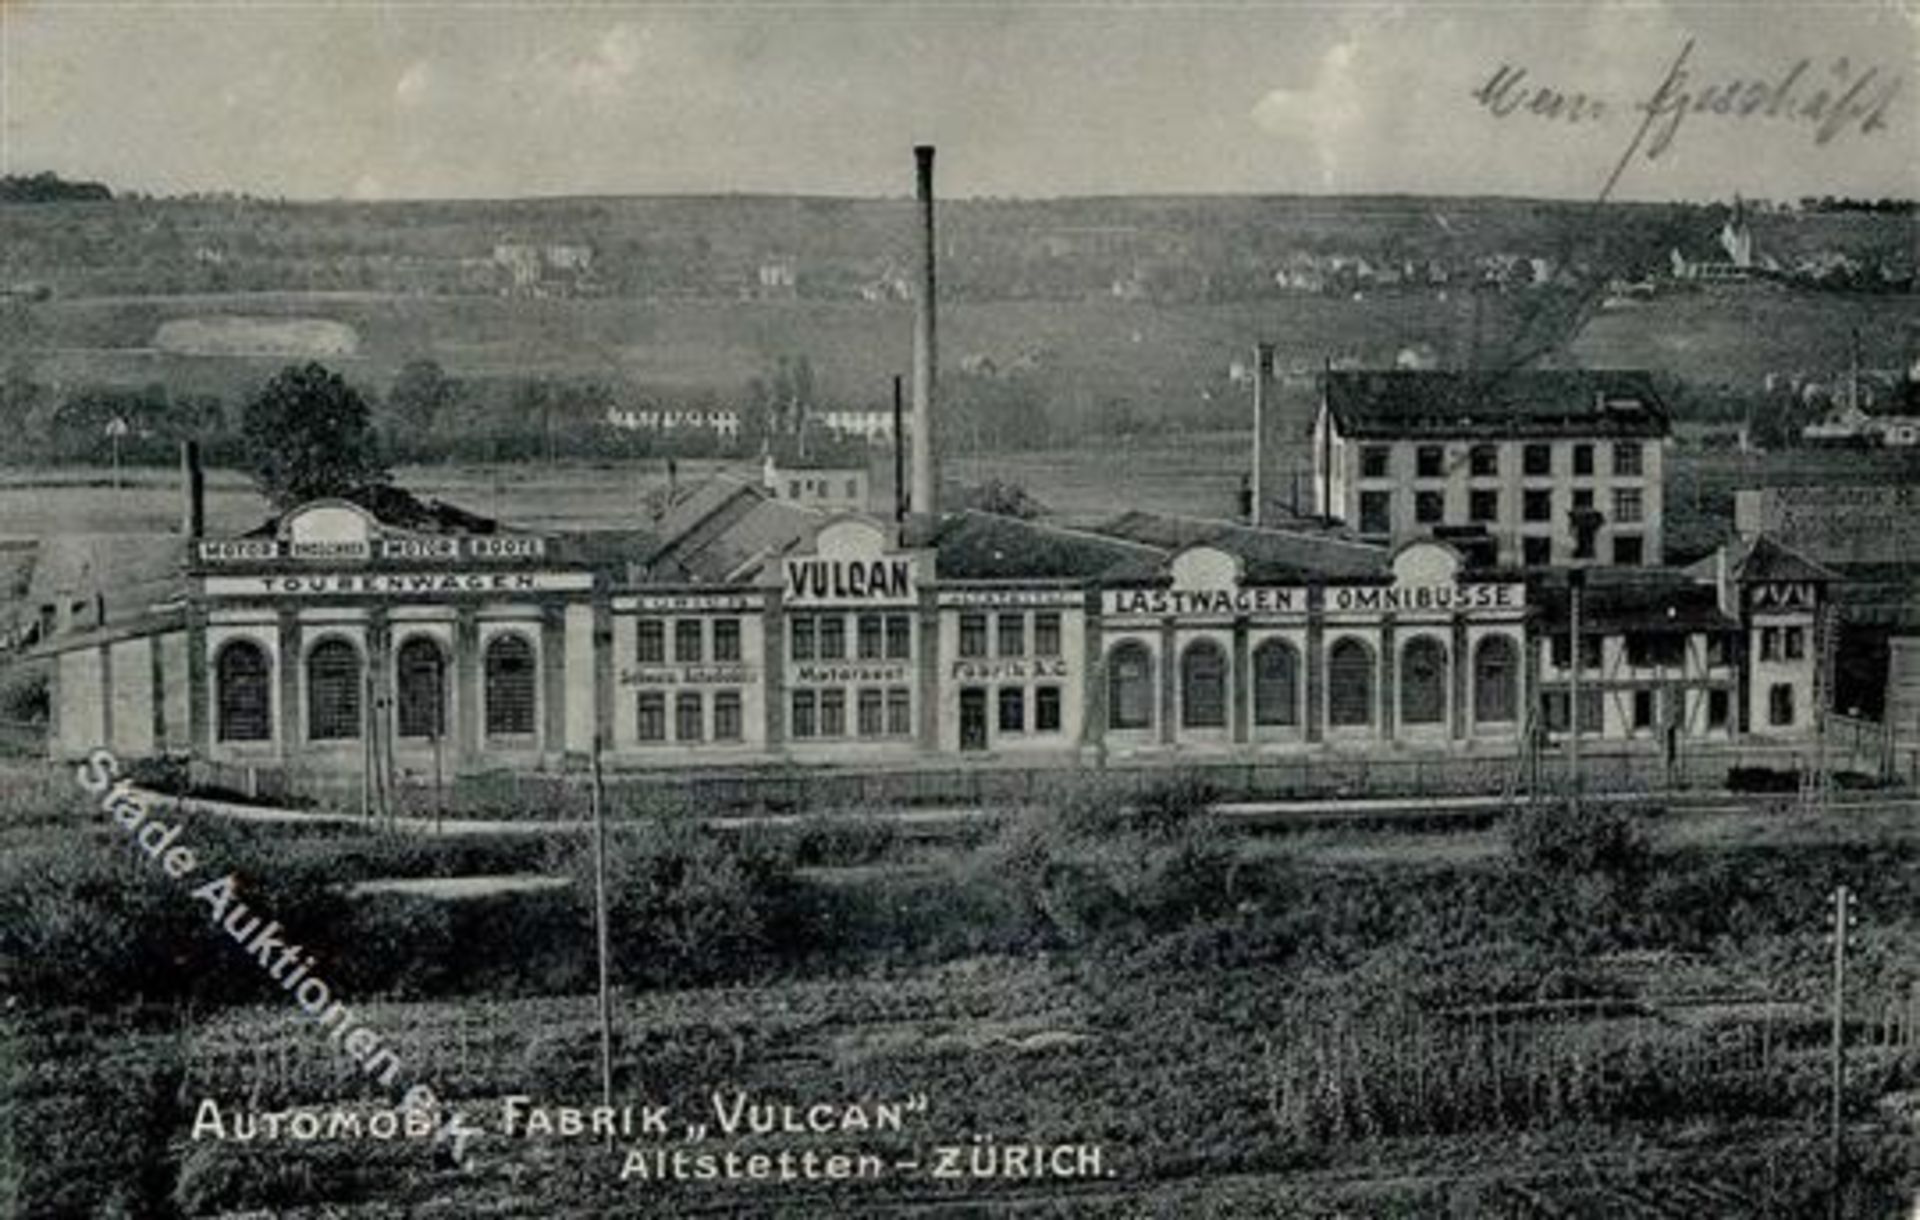 Altstetten (8000) Schweiz Automobilfabrik Vulcan Möbelfabrik Ausstellung 1907 II (Stauchung)Dieses